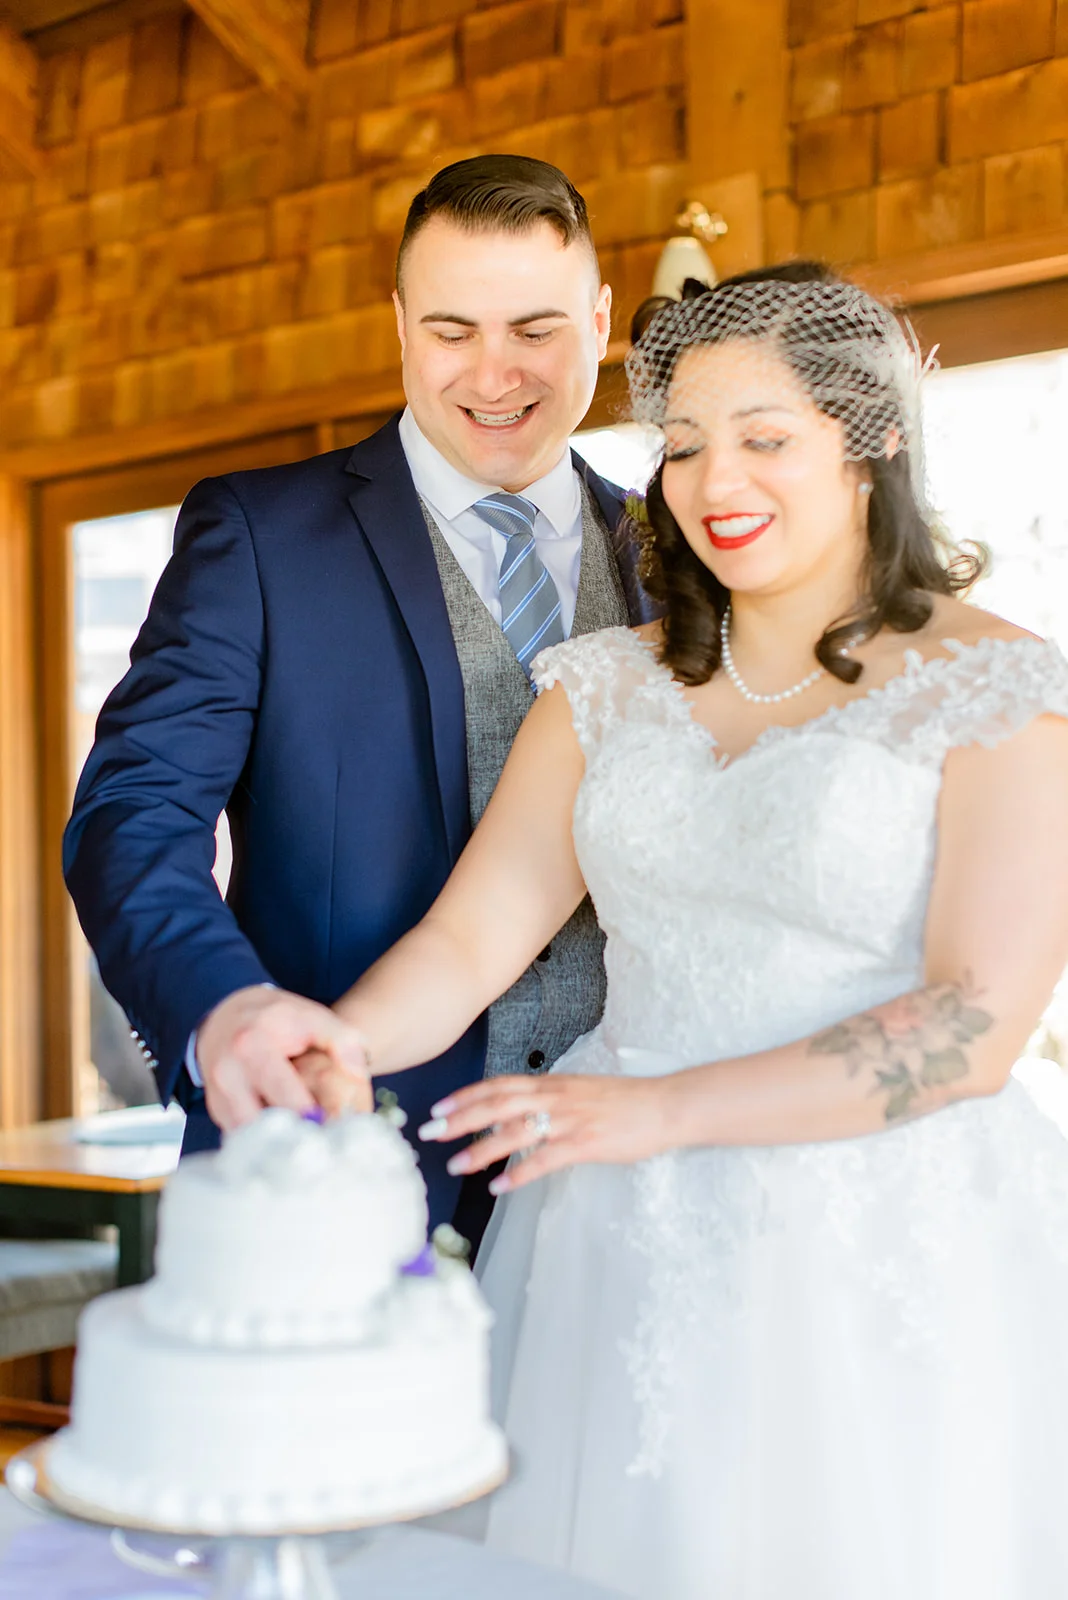 Wedding couple with cake